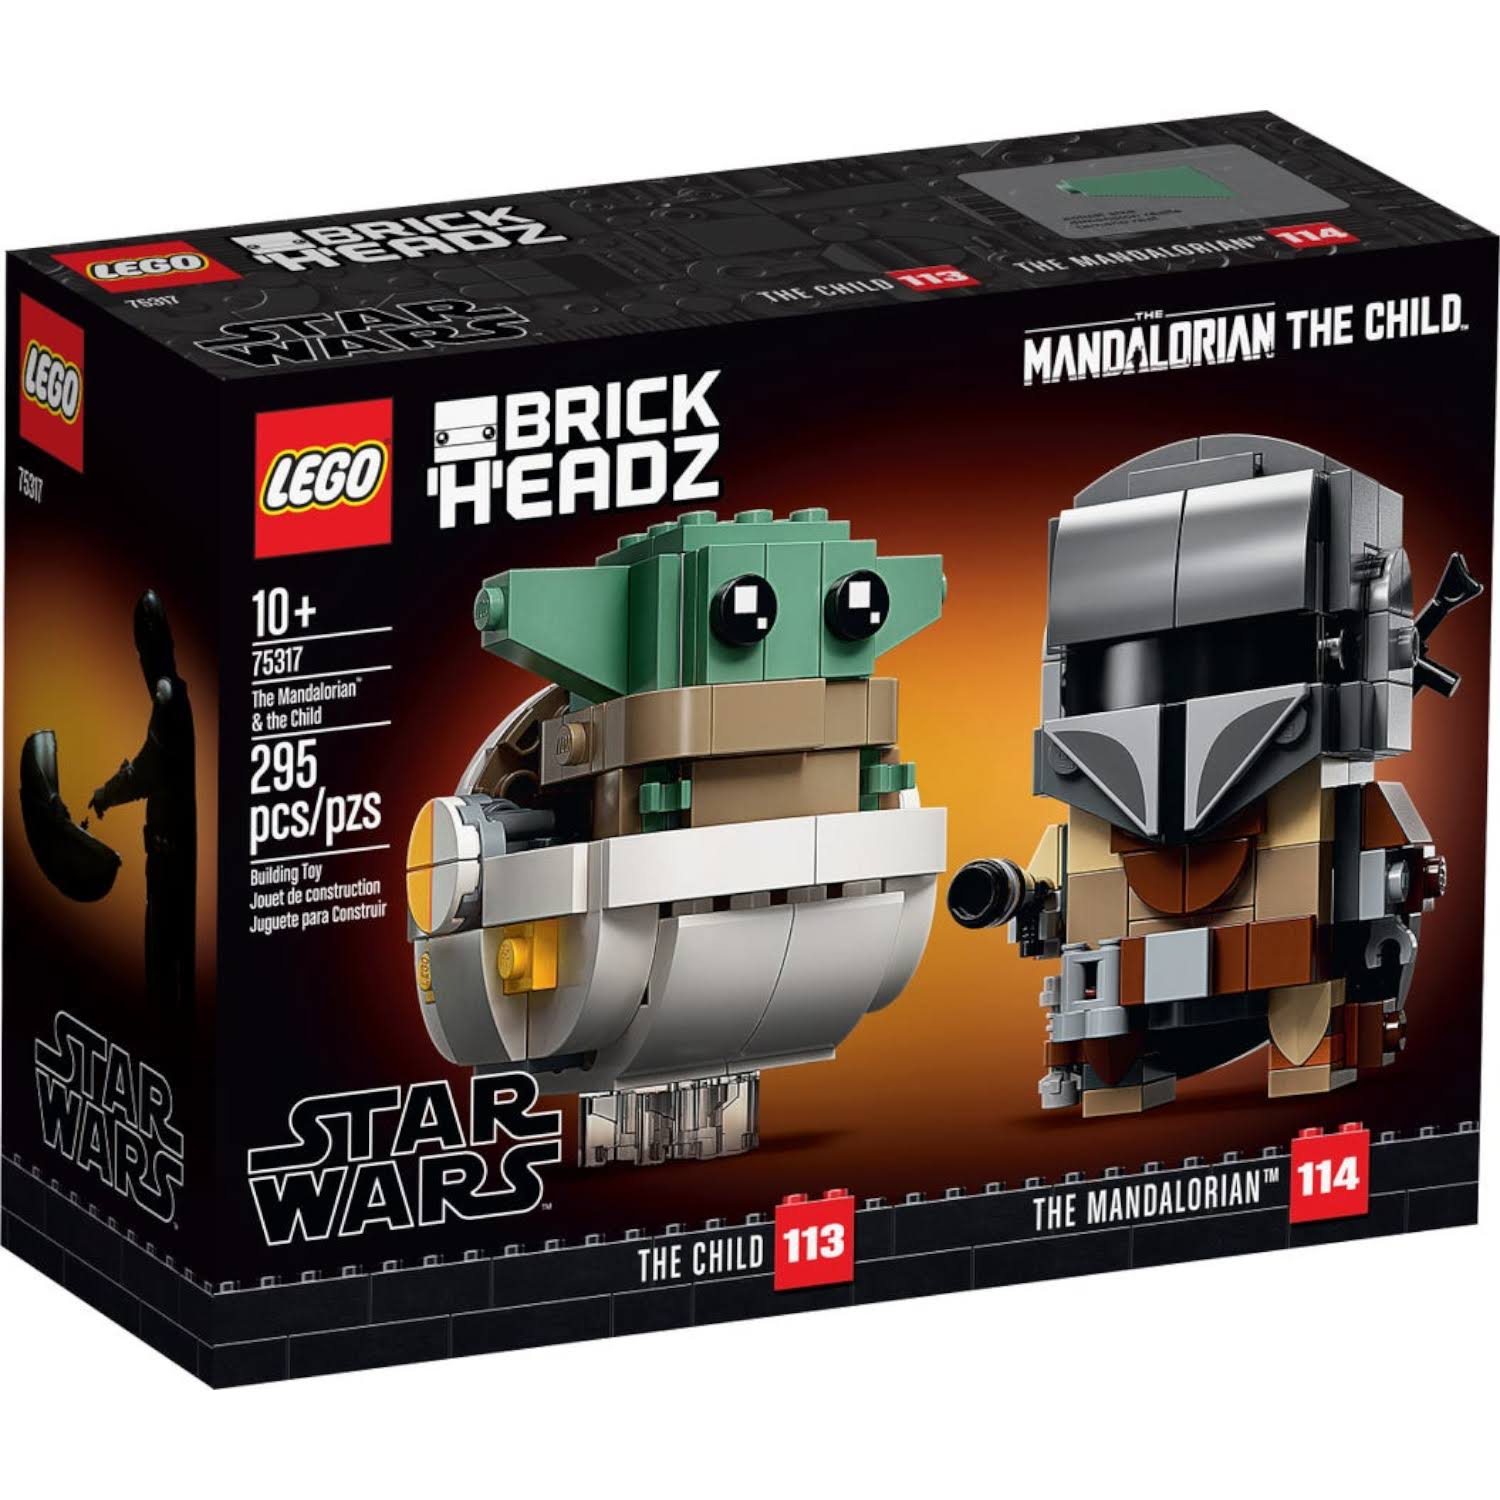 Lego Brick Headz #75317 The Mandalorian And The Child New / Sealed